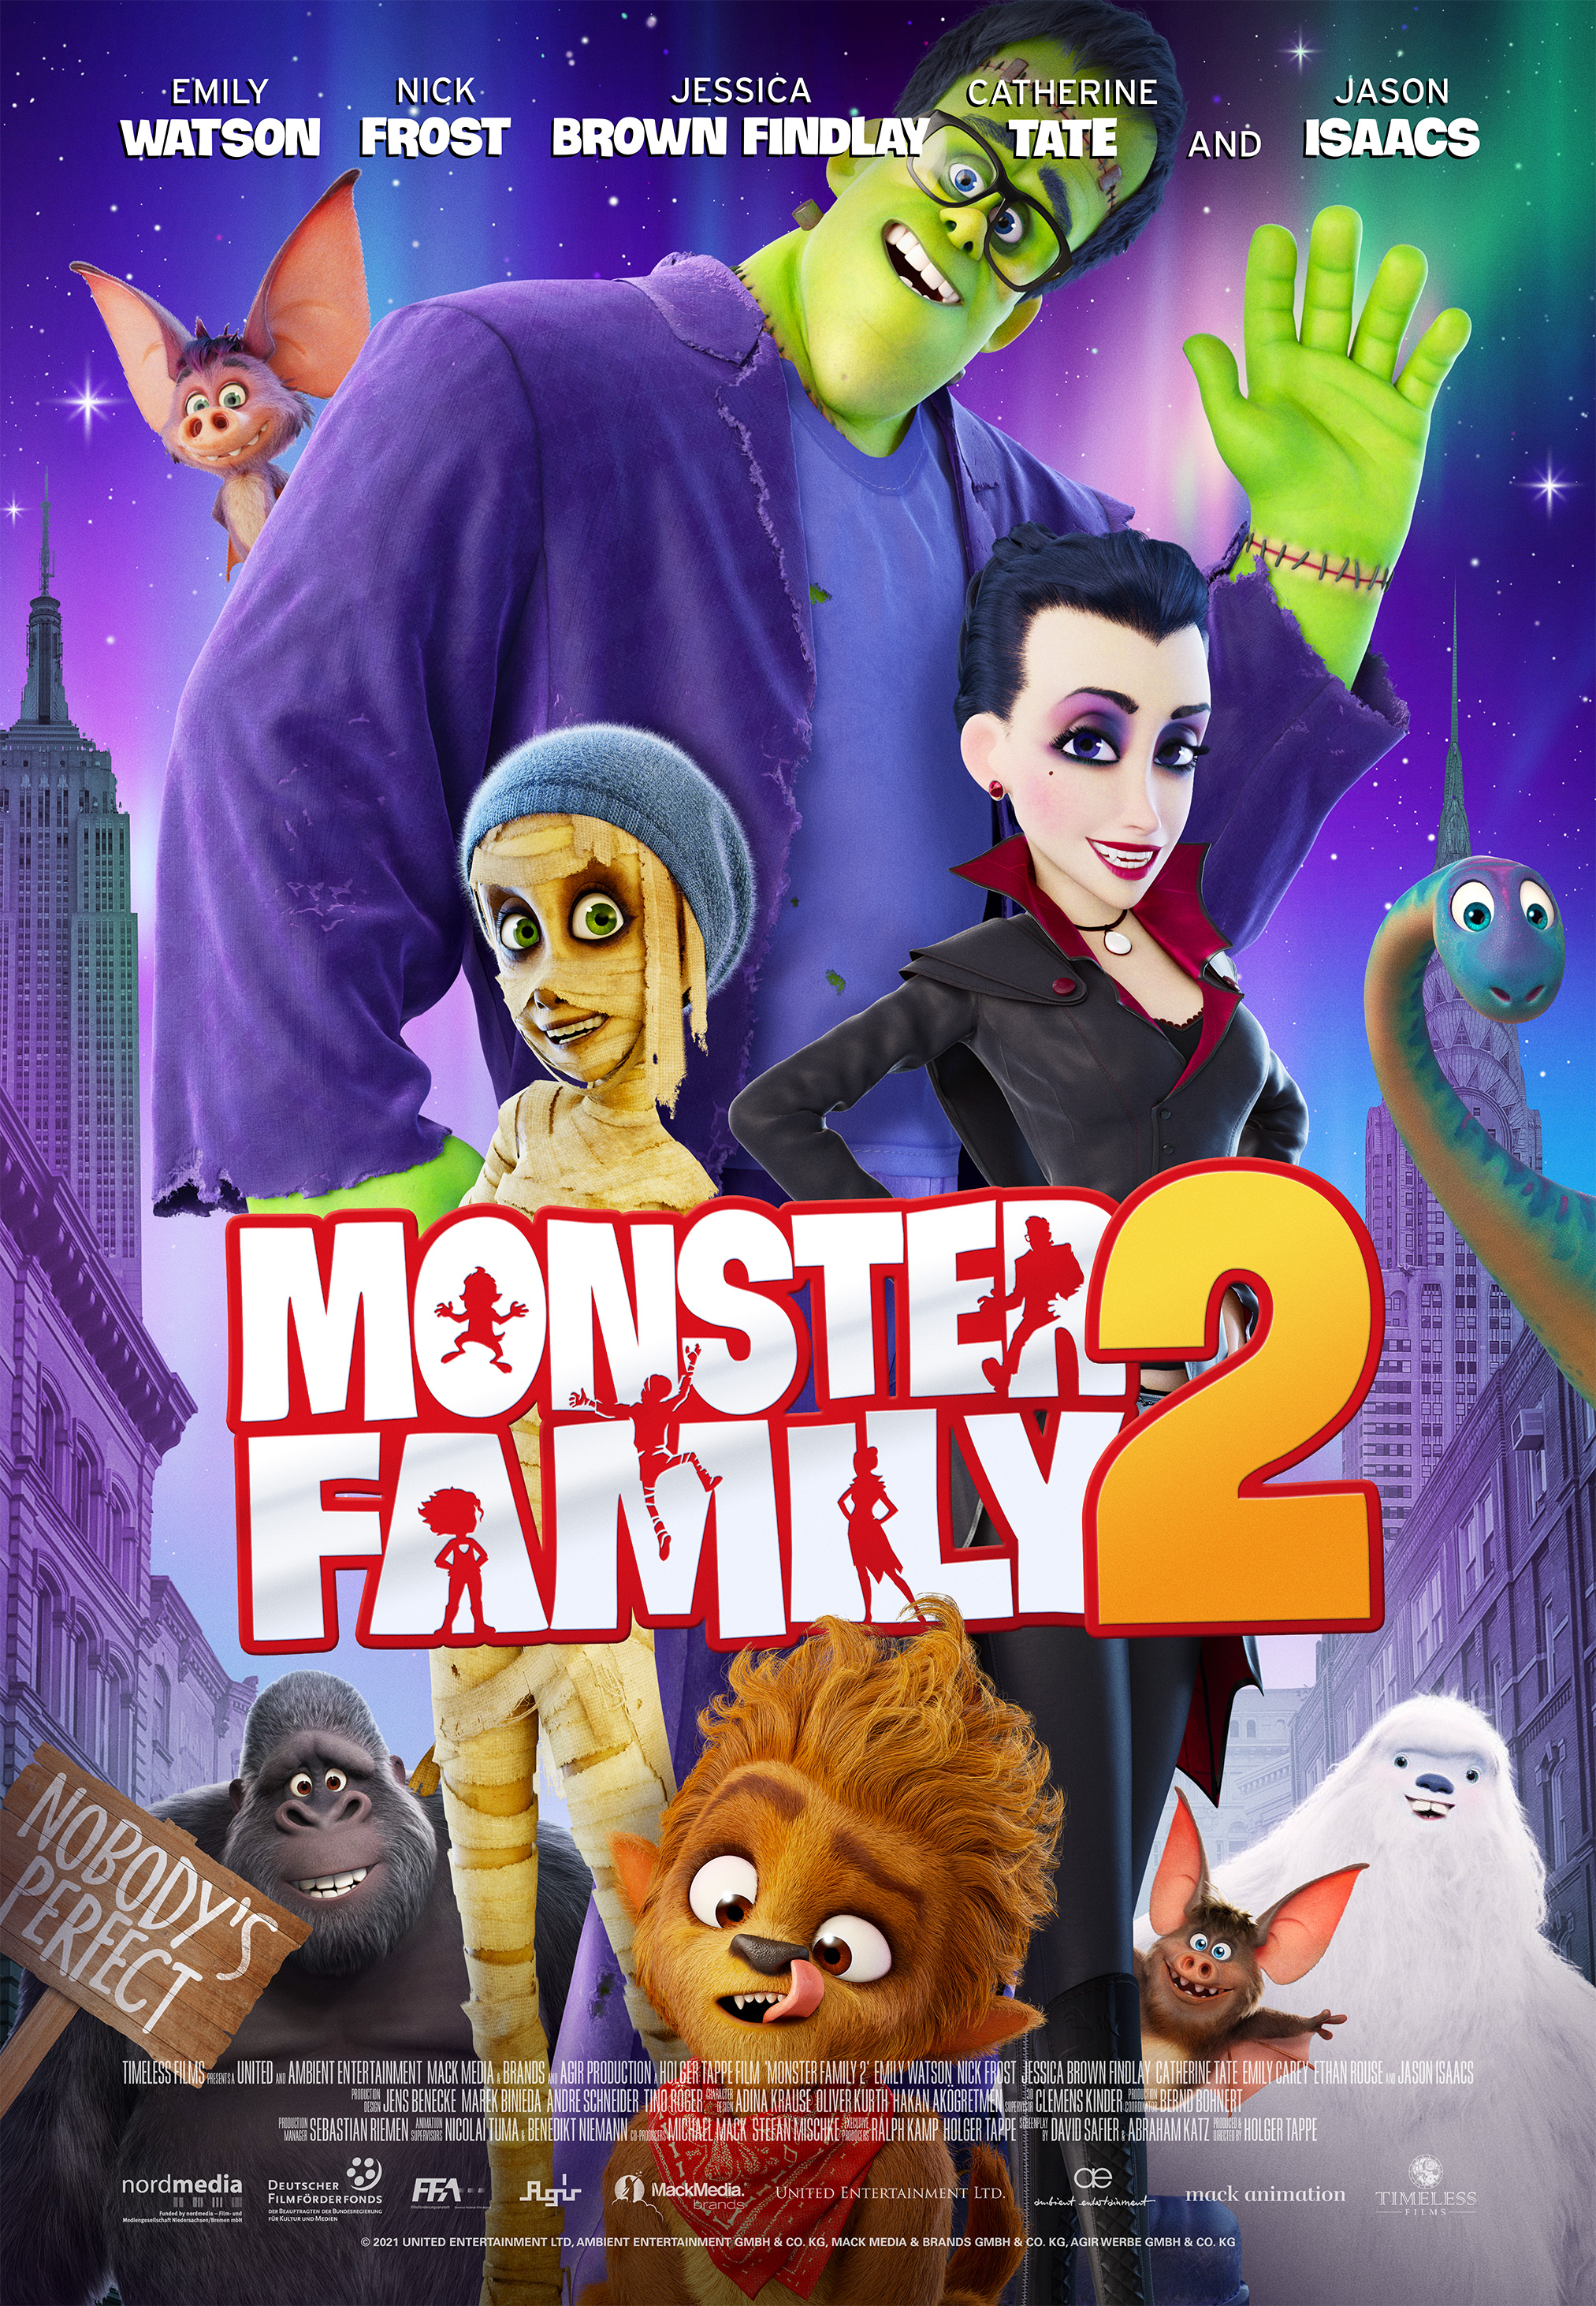 Nonton film Monster Family 2 layarkaca21 indoxx1 ganool online streaming terbaru